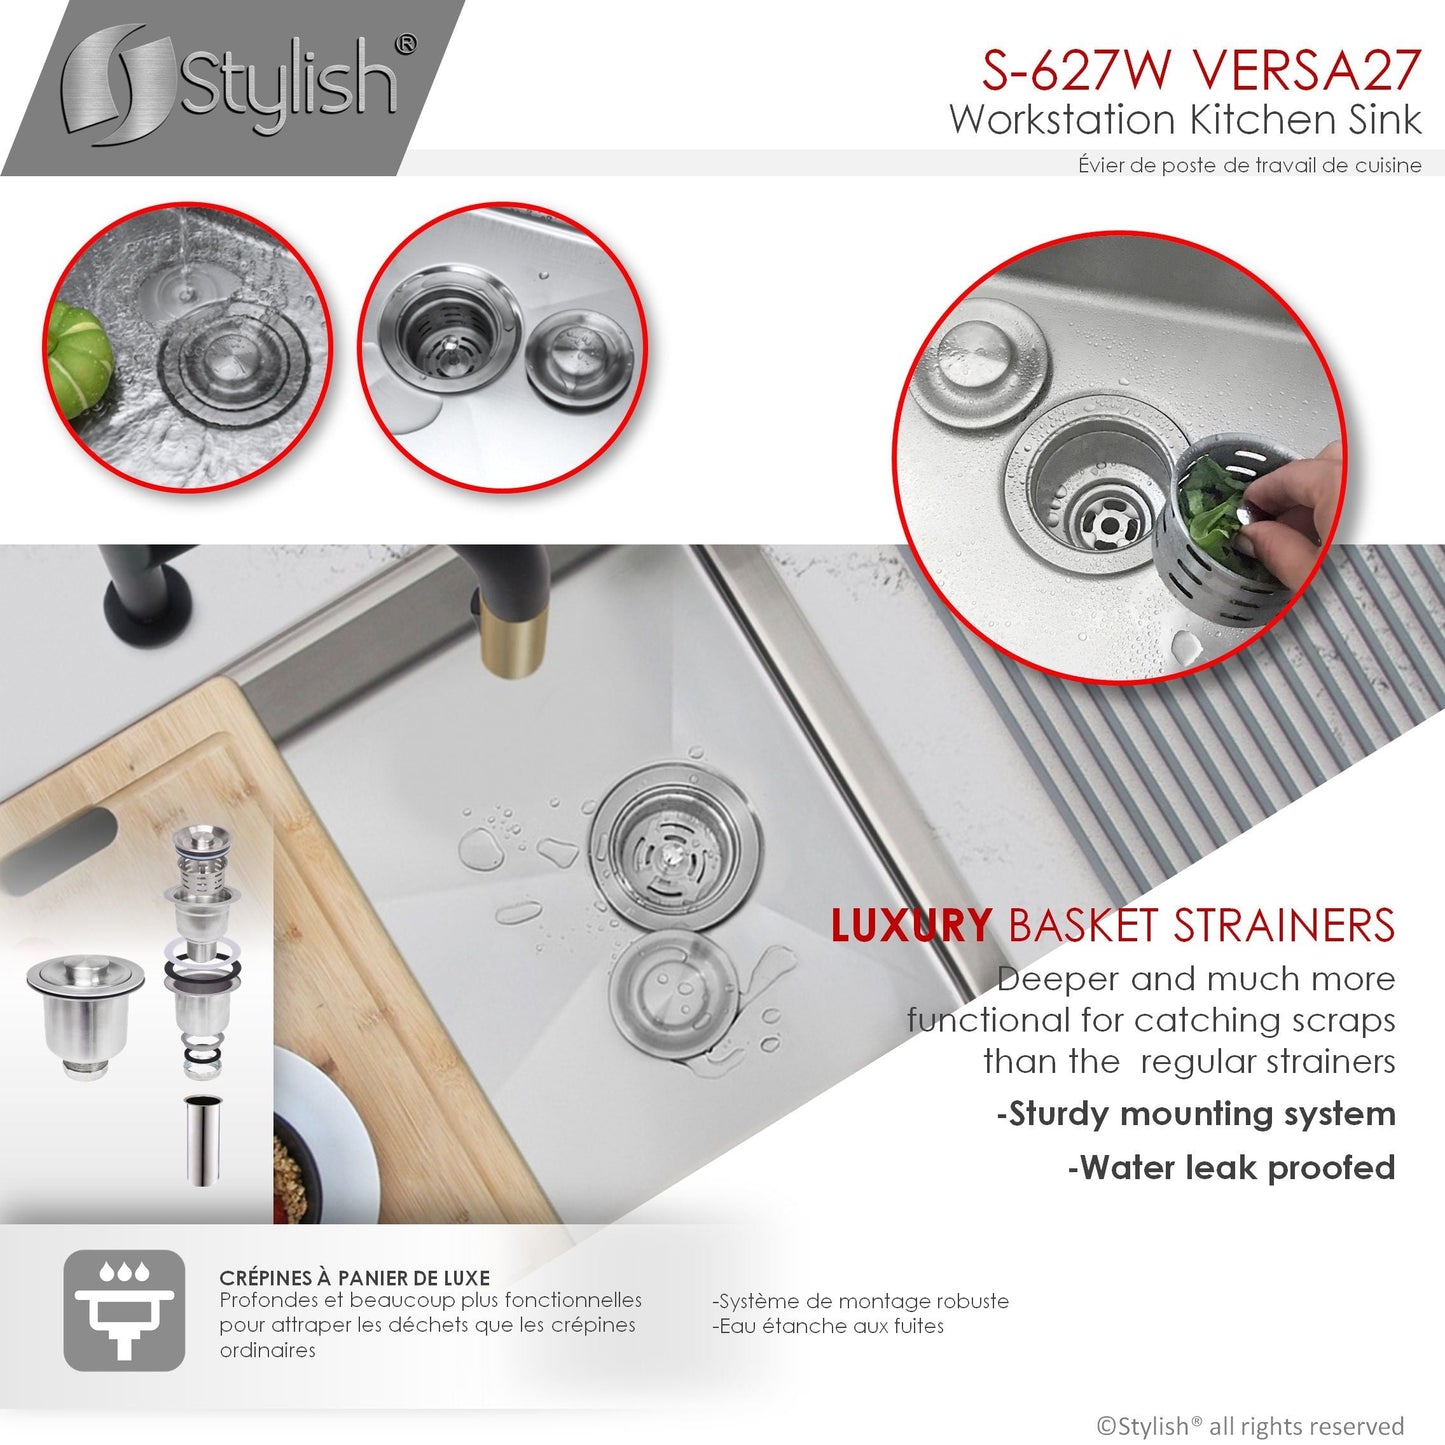 Stylish Versa27 27" x 19" Workstation Single Bowl Undermount 16 Gauge Stainless Steel Kitchen Sink with Built in Accessories S-627W